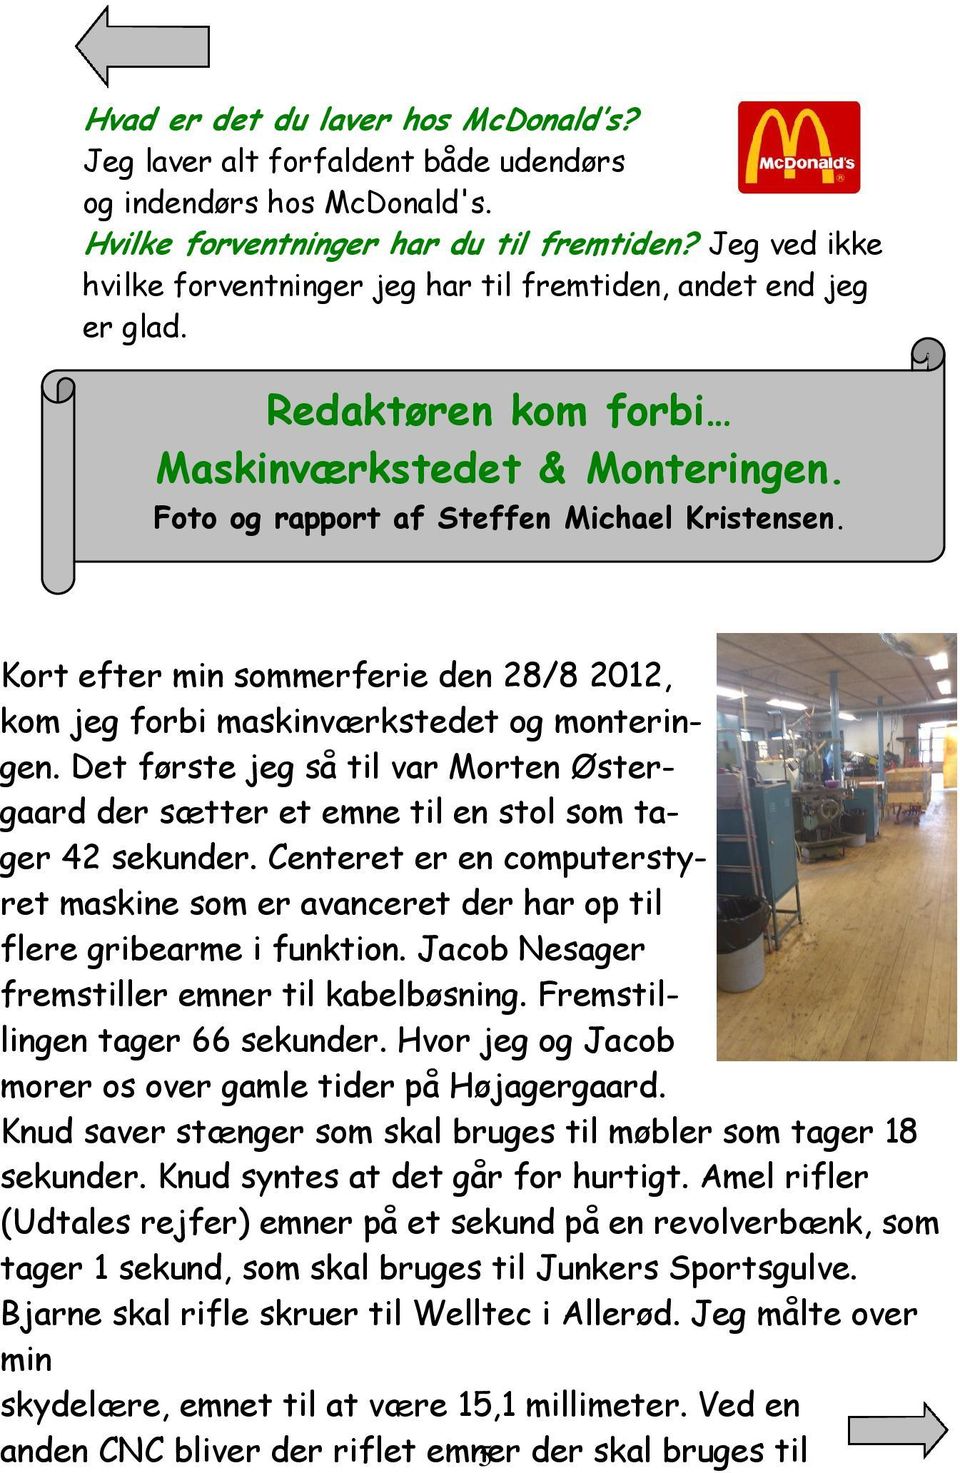 Kort efter min sommerferie den 28/8 2012, kom jeg forbi maskinværkstedet og monteringen. Det første jeg så til var Morten Østergaard der sætter et emne til en stol som tager 42 sekunder.